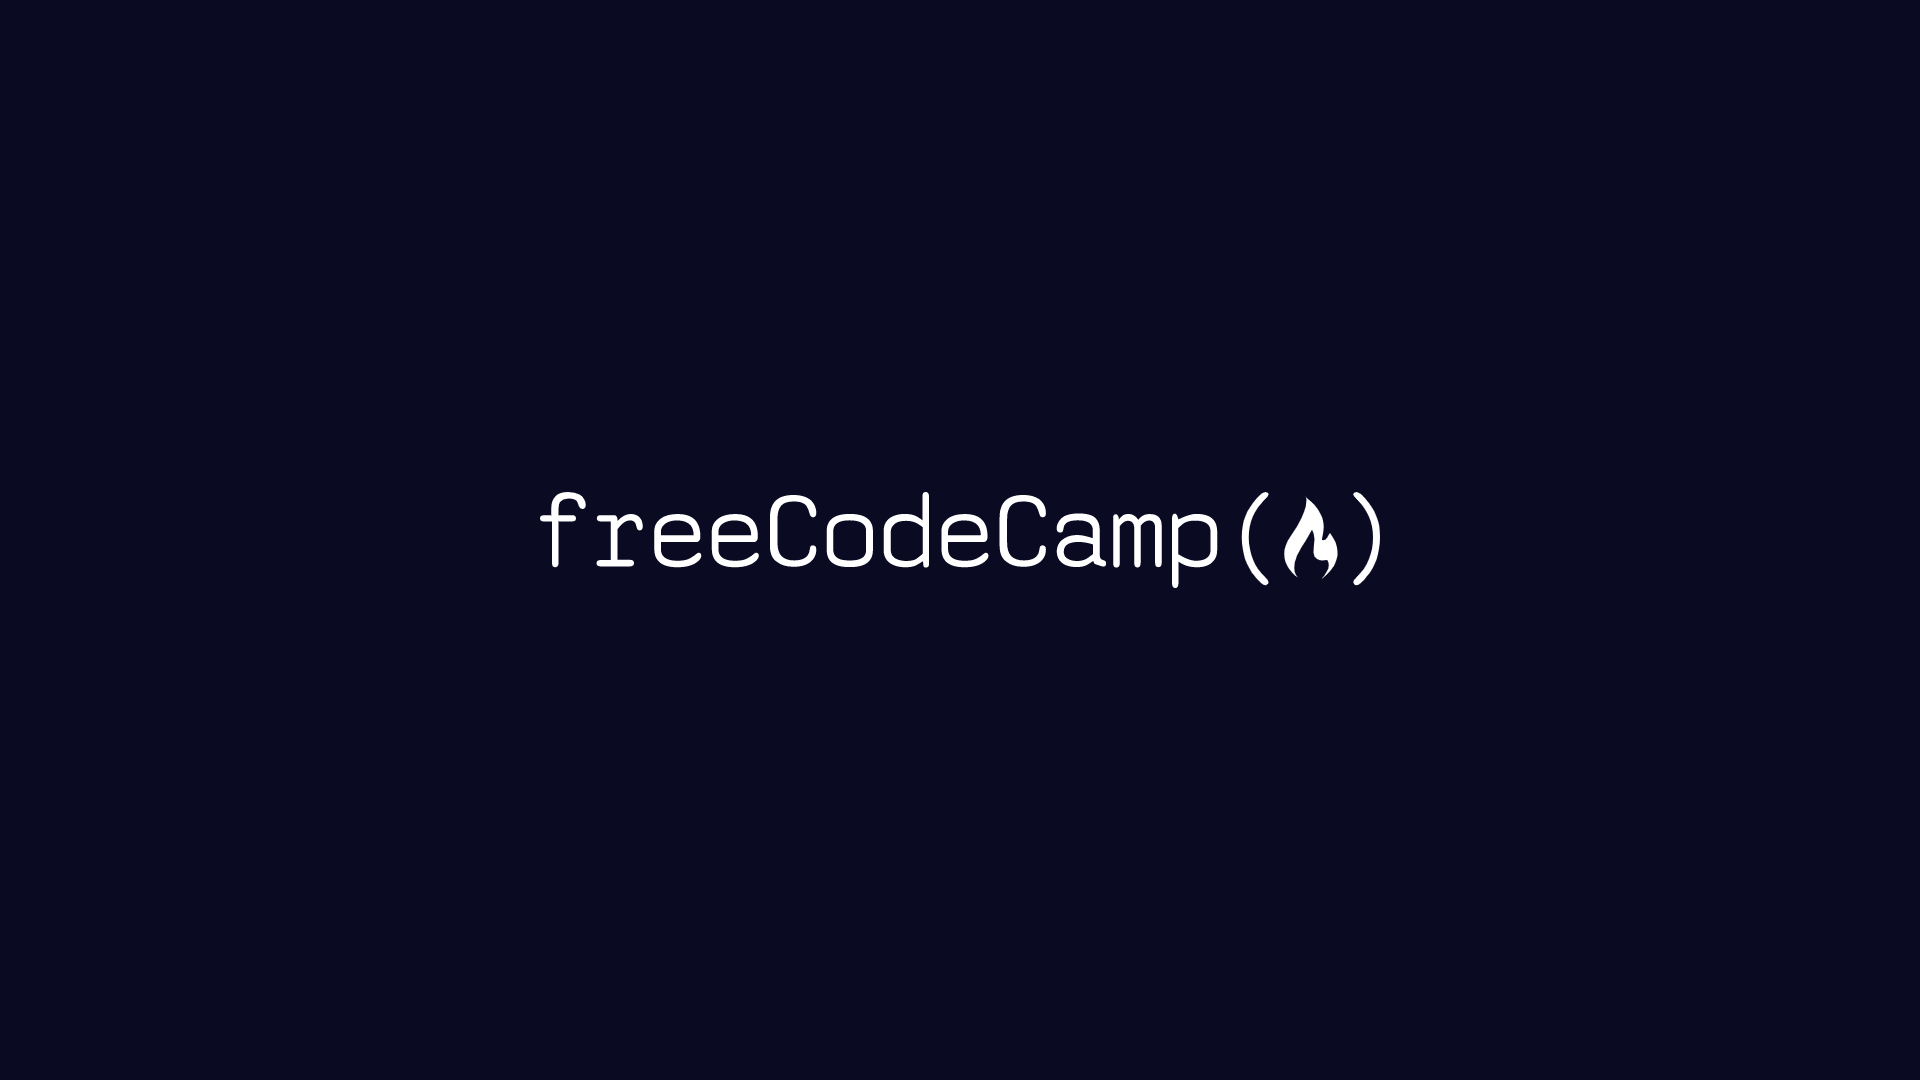 www.freecodecamp.org